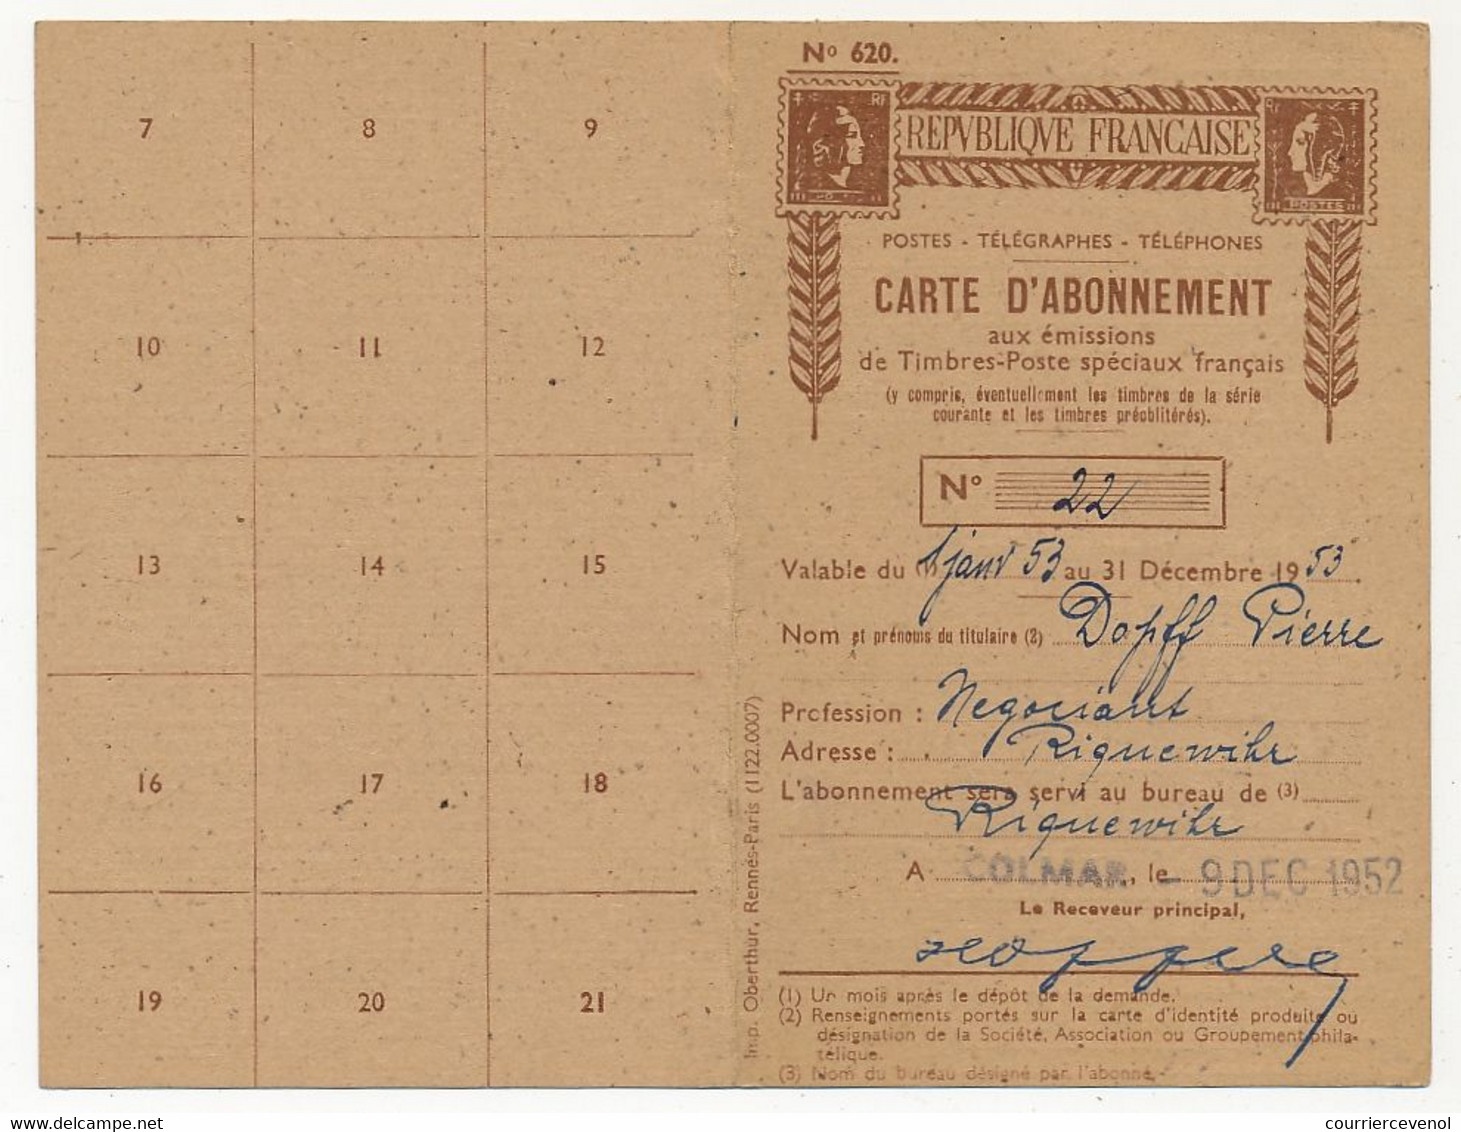 Carte d'abonnement aux Timbres-poste spéciaux français, affr 500F P.A Marseille, obl Colmar R.P 10/12/1952